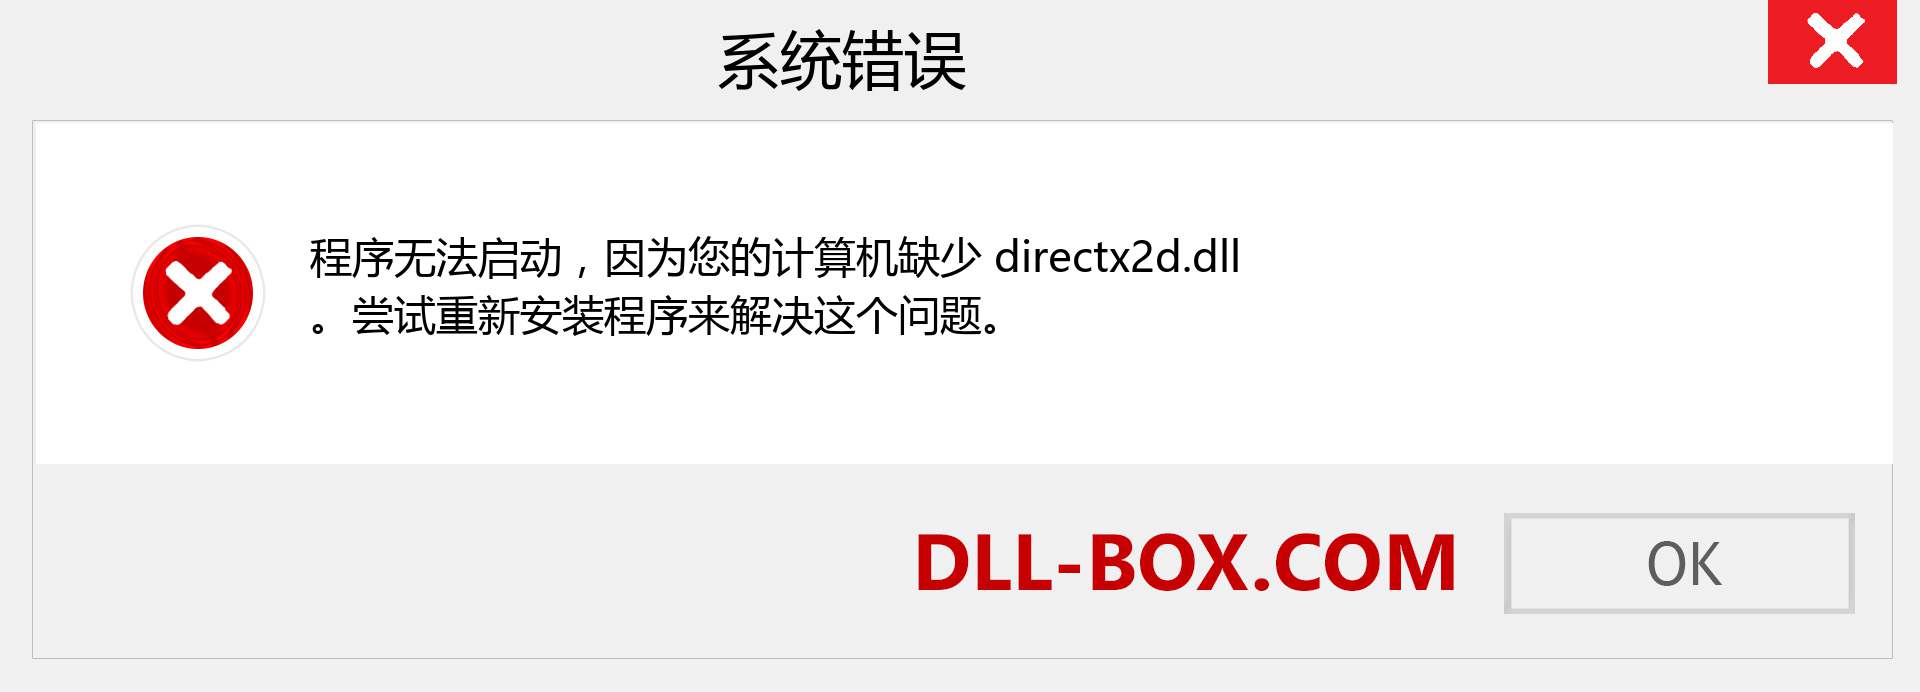 directx2d.dll 文件丢失？。 适用于 Windows 7、8、10 的下载 - 修复 Windows、照片、图像上的 directx2d dll 丢失错误